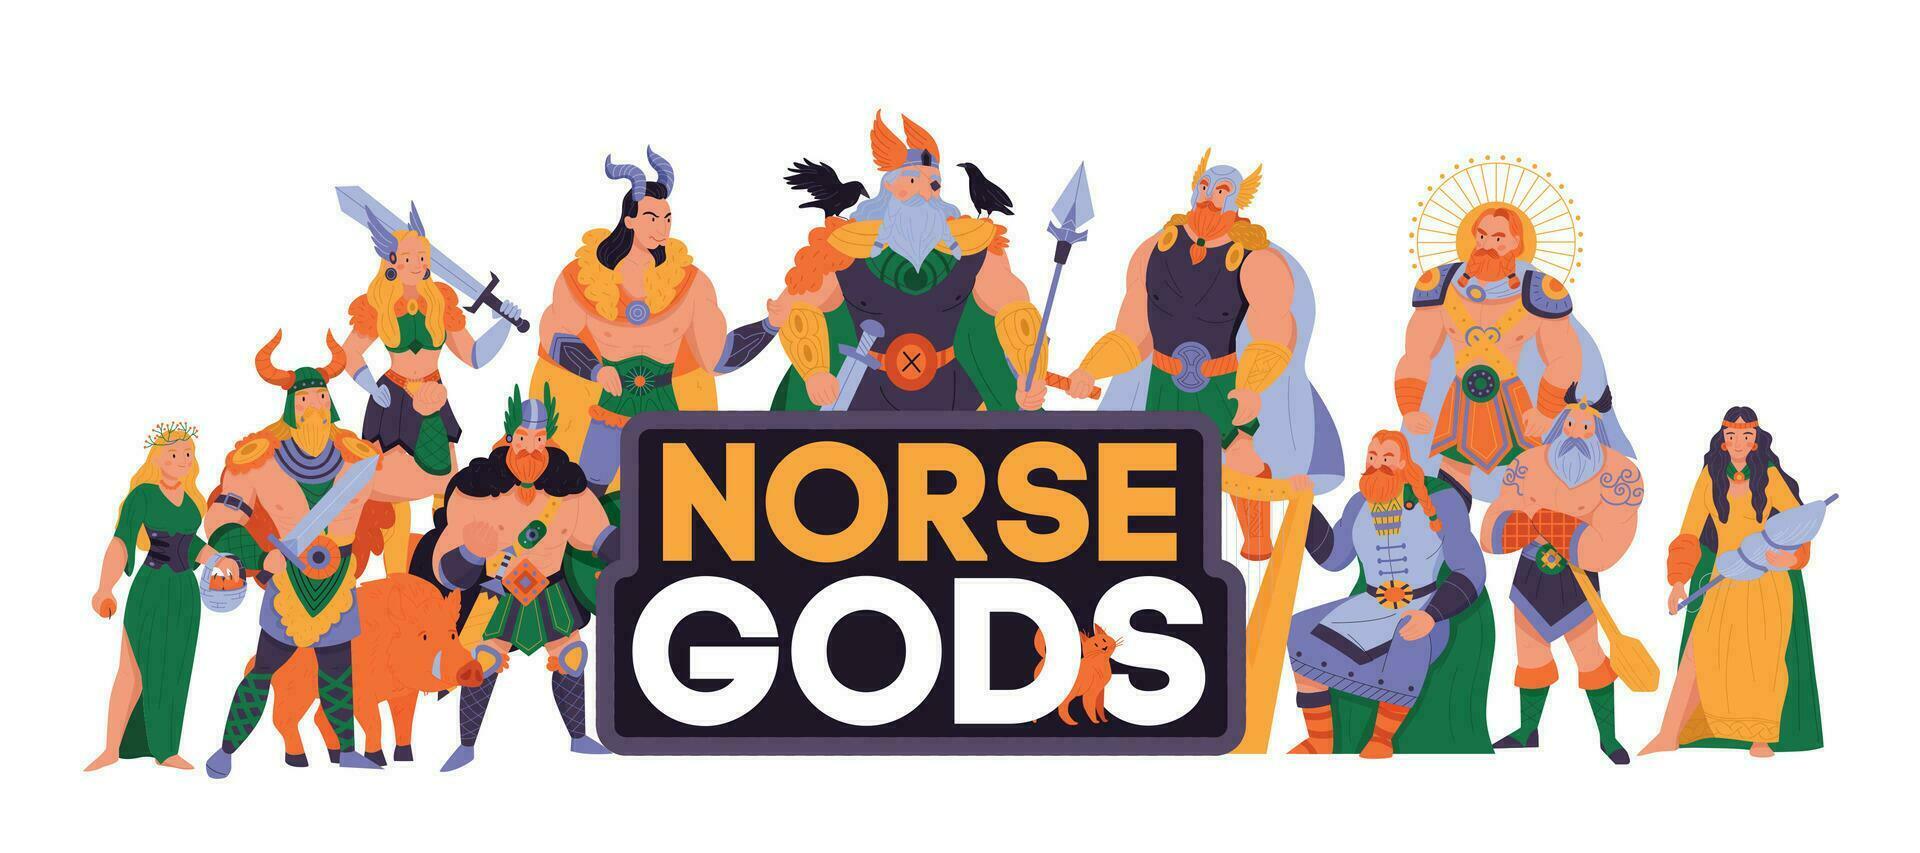 norueguês Deuses desenho animado ilustração vetor